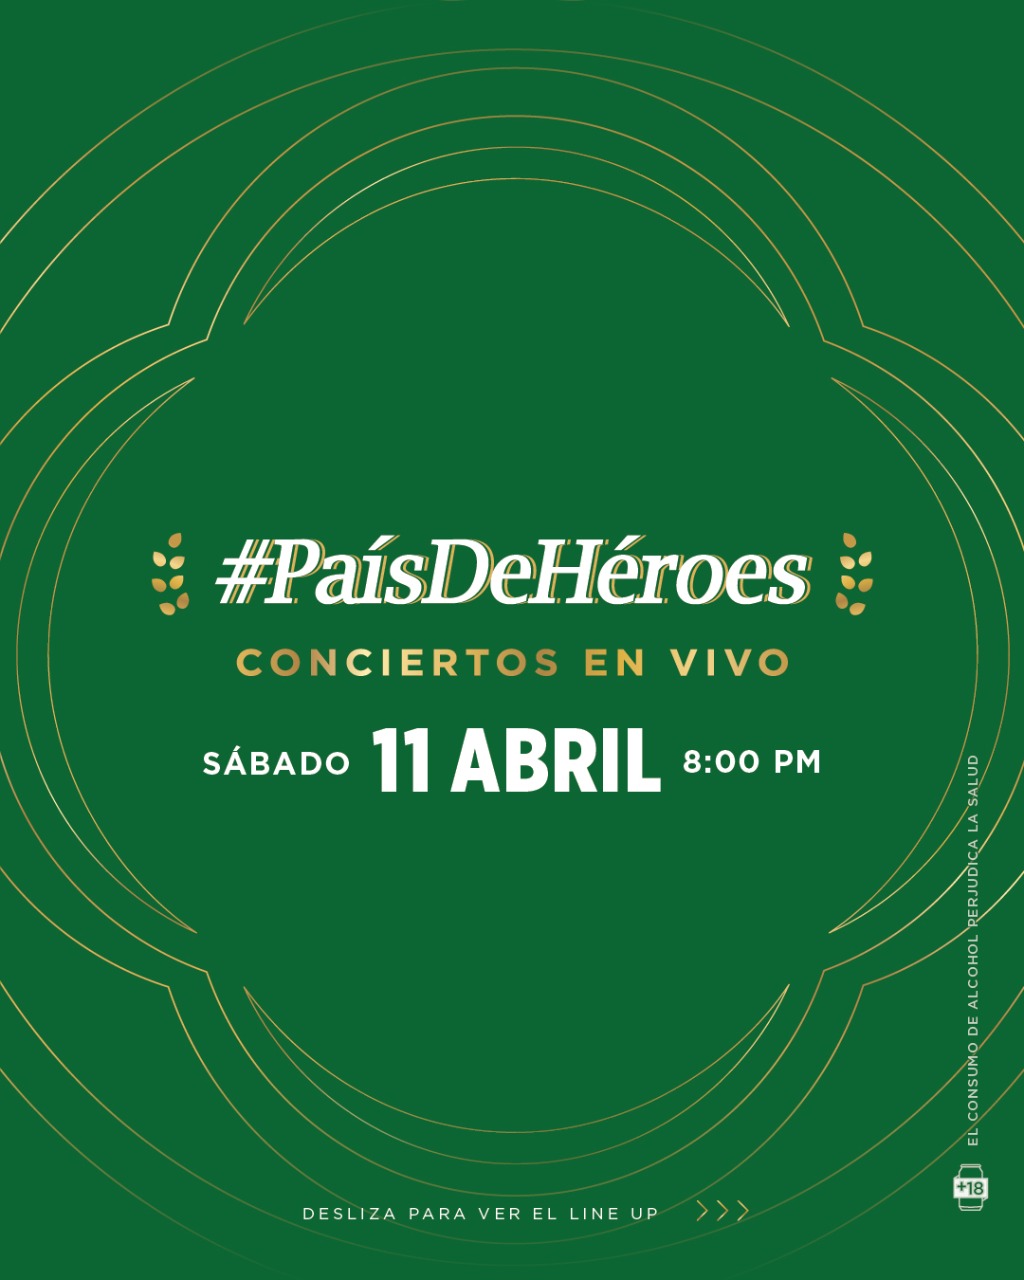 Cerveza Presidente realiza concierto en-vivo #PaísDeHéroes pro-recaudación de fondos